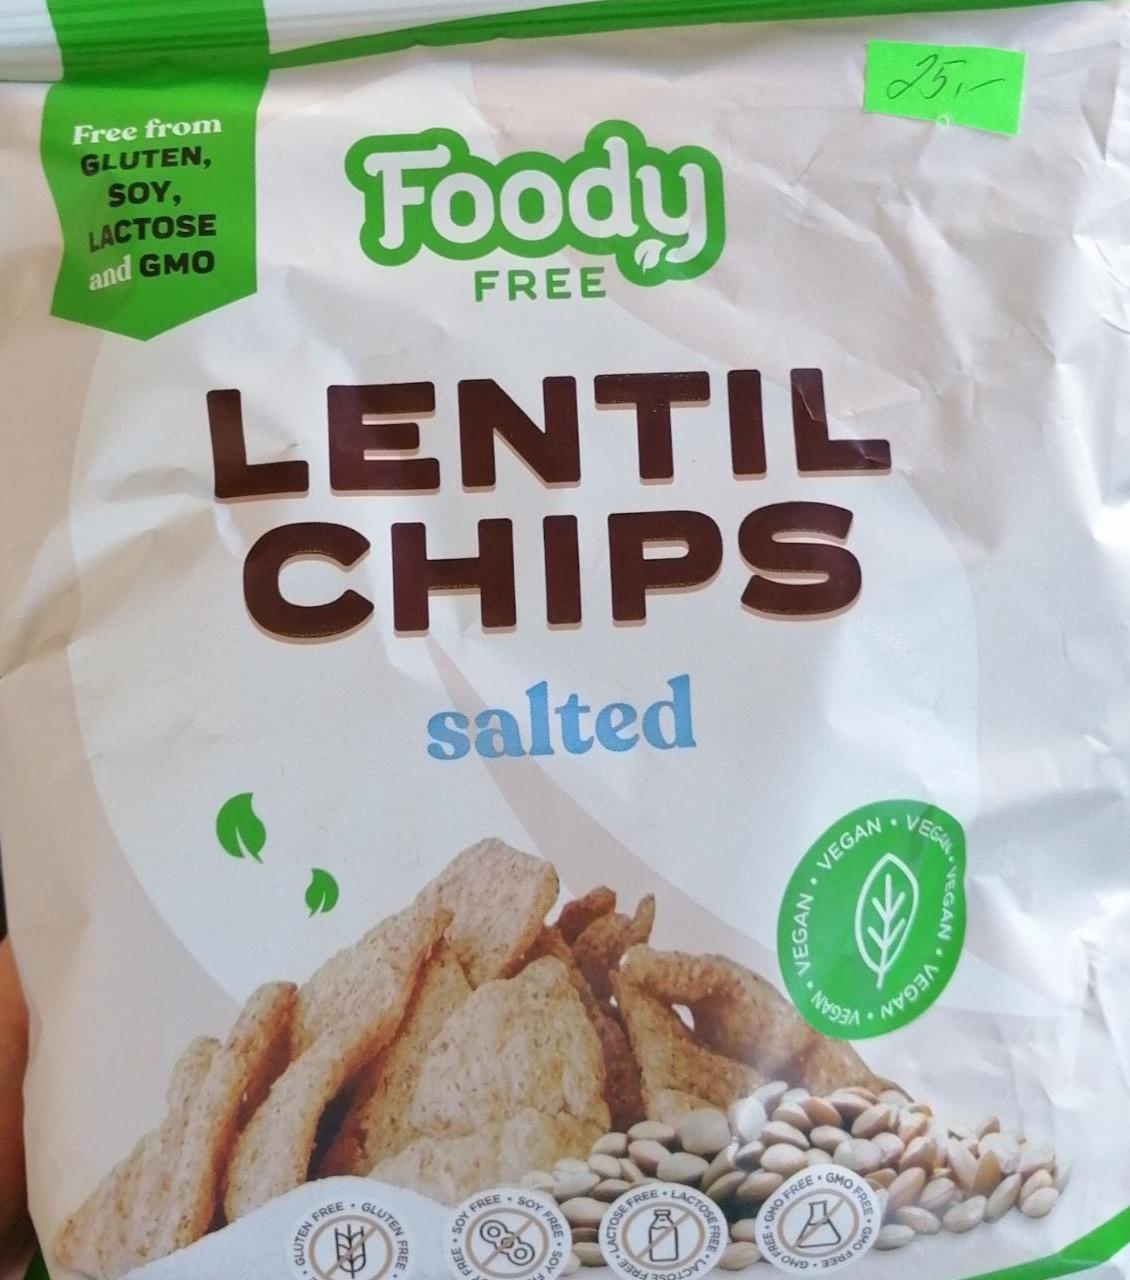 Fotografie - Lentil Chips salted Foody free